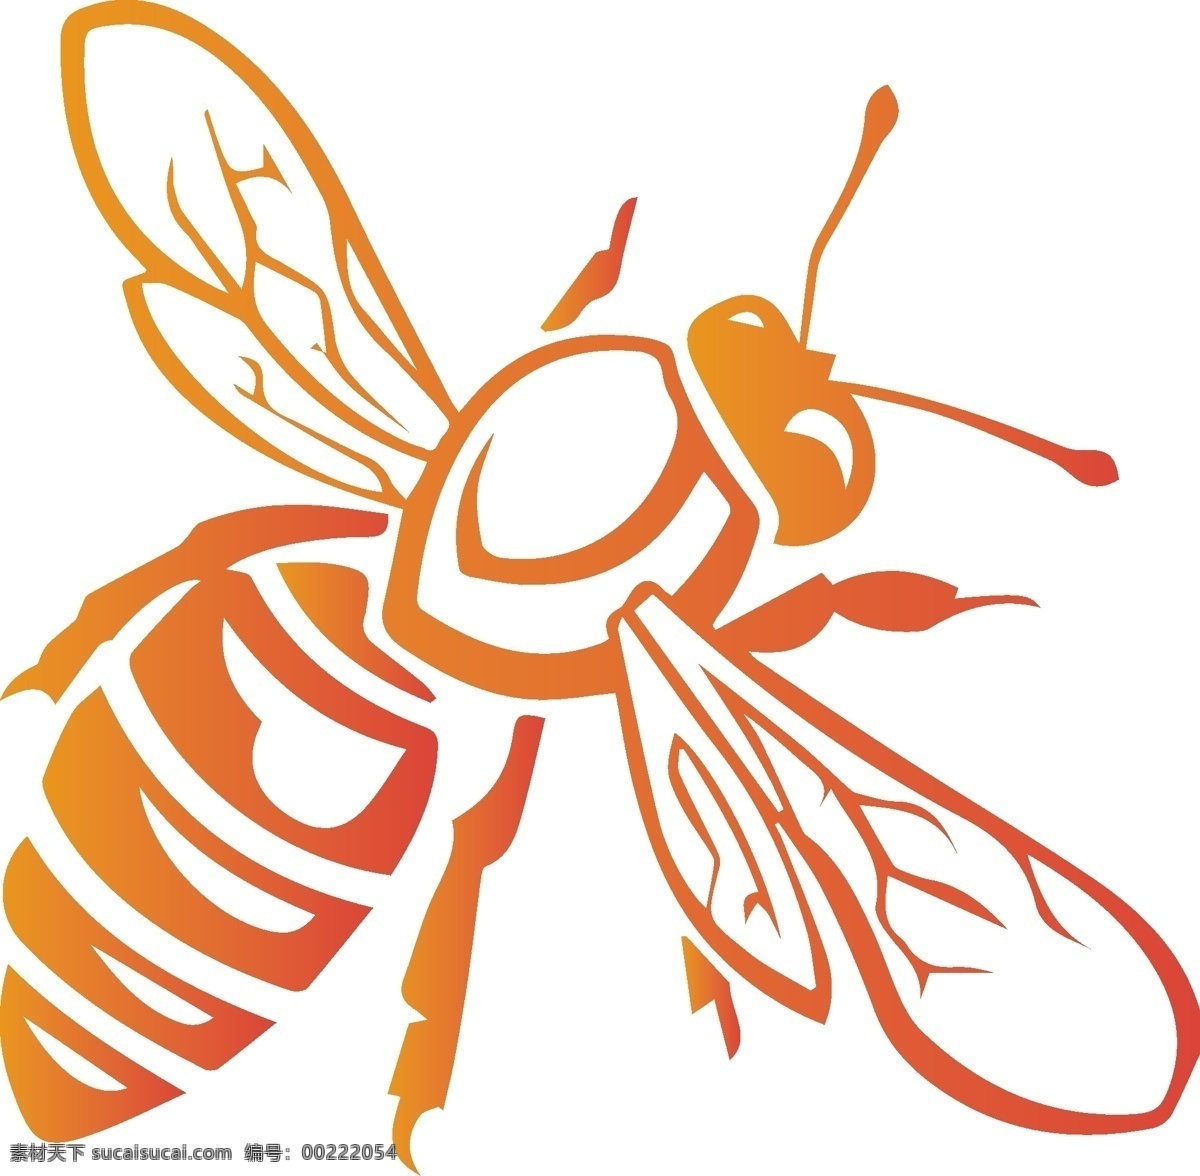 蜜蜂矢量图形 蜜蜂矢量 卡通蜜蜂 矢量蜜蜂 手绘蜜蜂 蜜蜂手绘 卡通小蜜蜂 可爱动物 可爱小蜜蜂 矢量卡通 手绘蜜蜂蜂蜜 蜜蜂蜂蜜 卡通蜜蜂蜂蜜 手绘 矢量素材 矢量 实用 蜜蜂 蜂蜜素材图 cdr素材 手绘矢量图 蜂蜜 蜜蜂素材 蜜蜂矢量图 天然蜂蜜 老蜂农 养蜂人 生物世界 昆虫